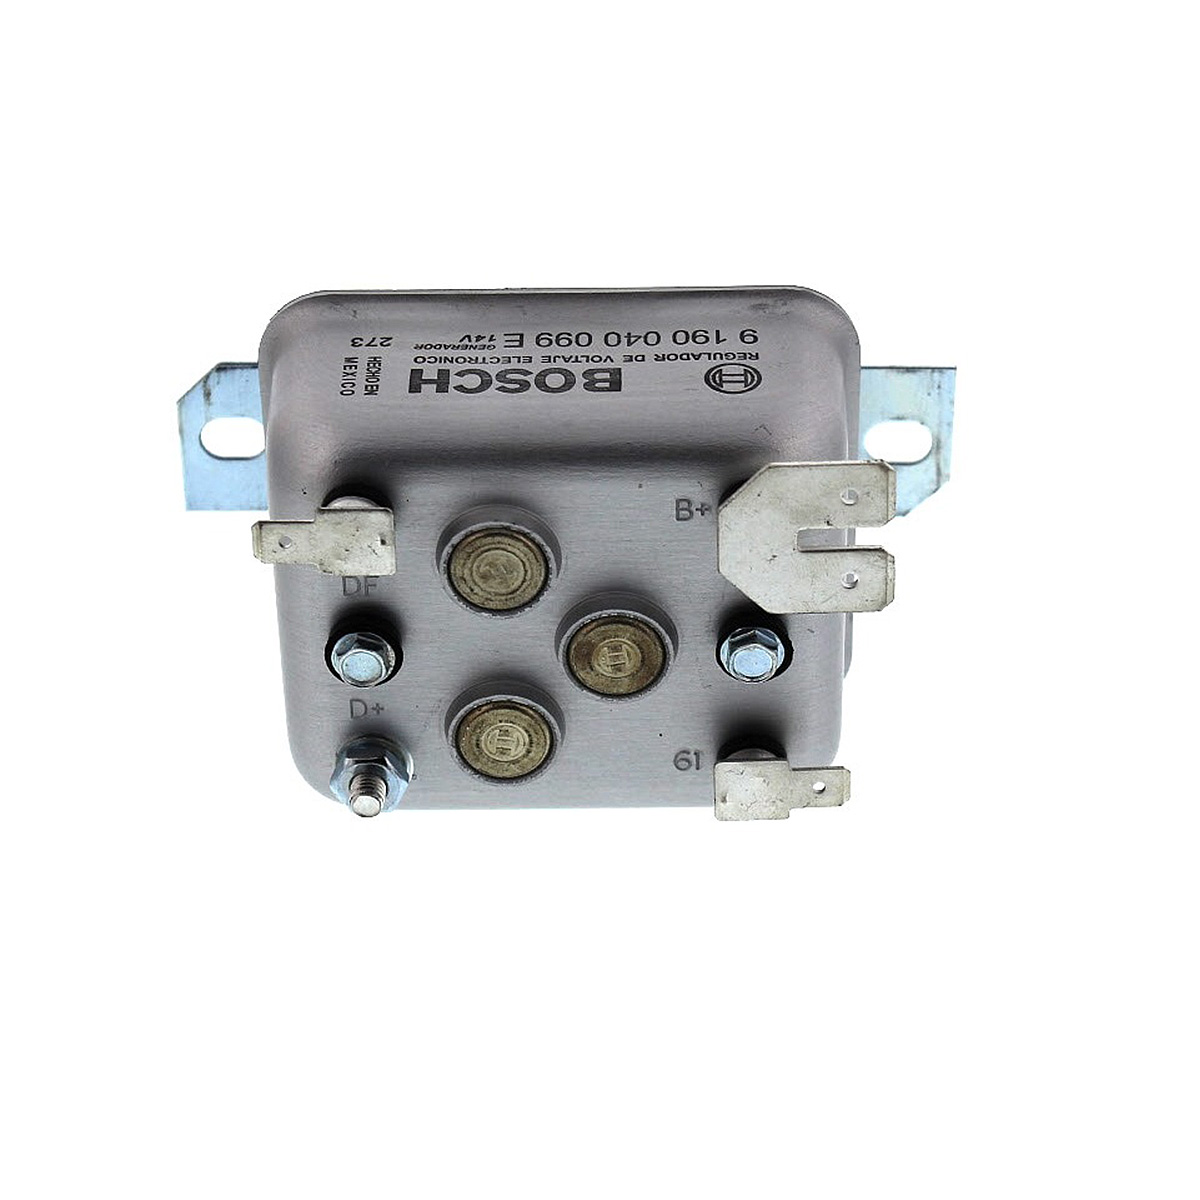 Bosch VW Voltage Regulator - 12 Volt - for GR15 16 & 17 Generators